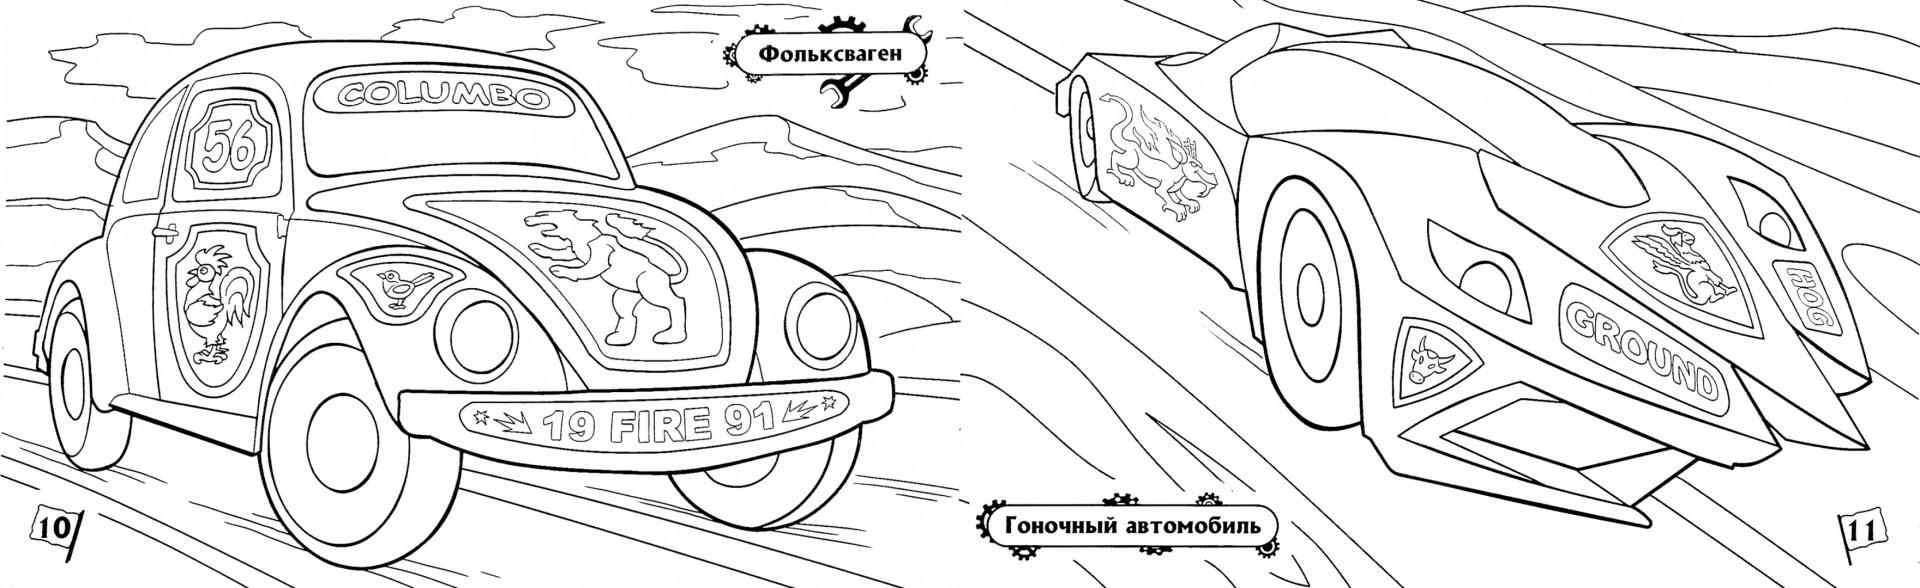 Иллюстрация 1 из 5 для Автомобили | Лабиринт - книги. Источник: Лабиринт